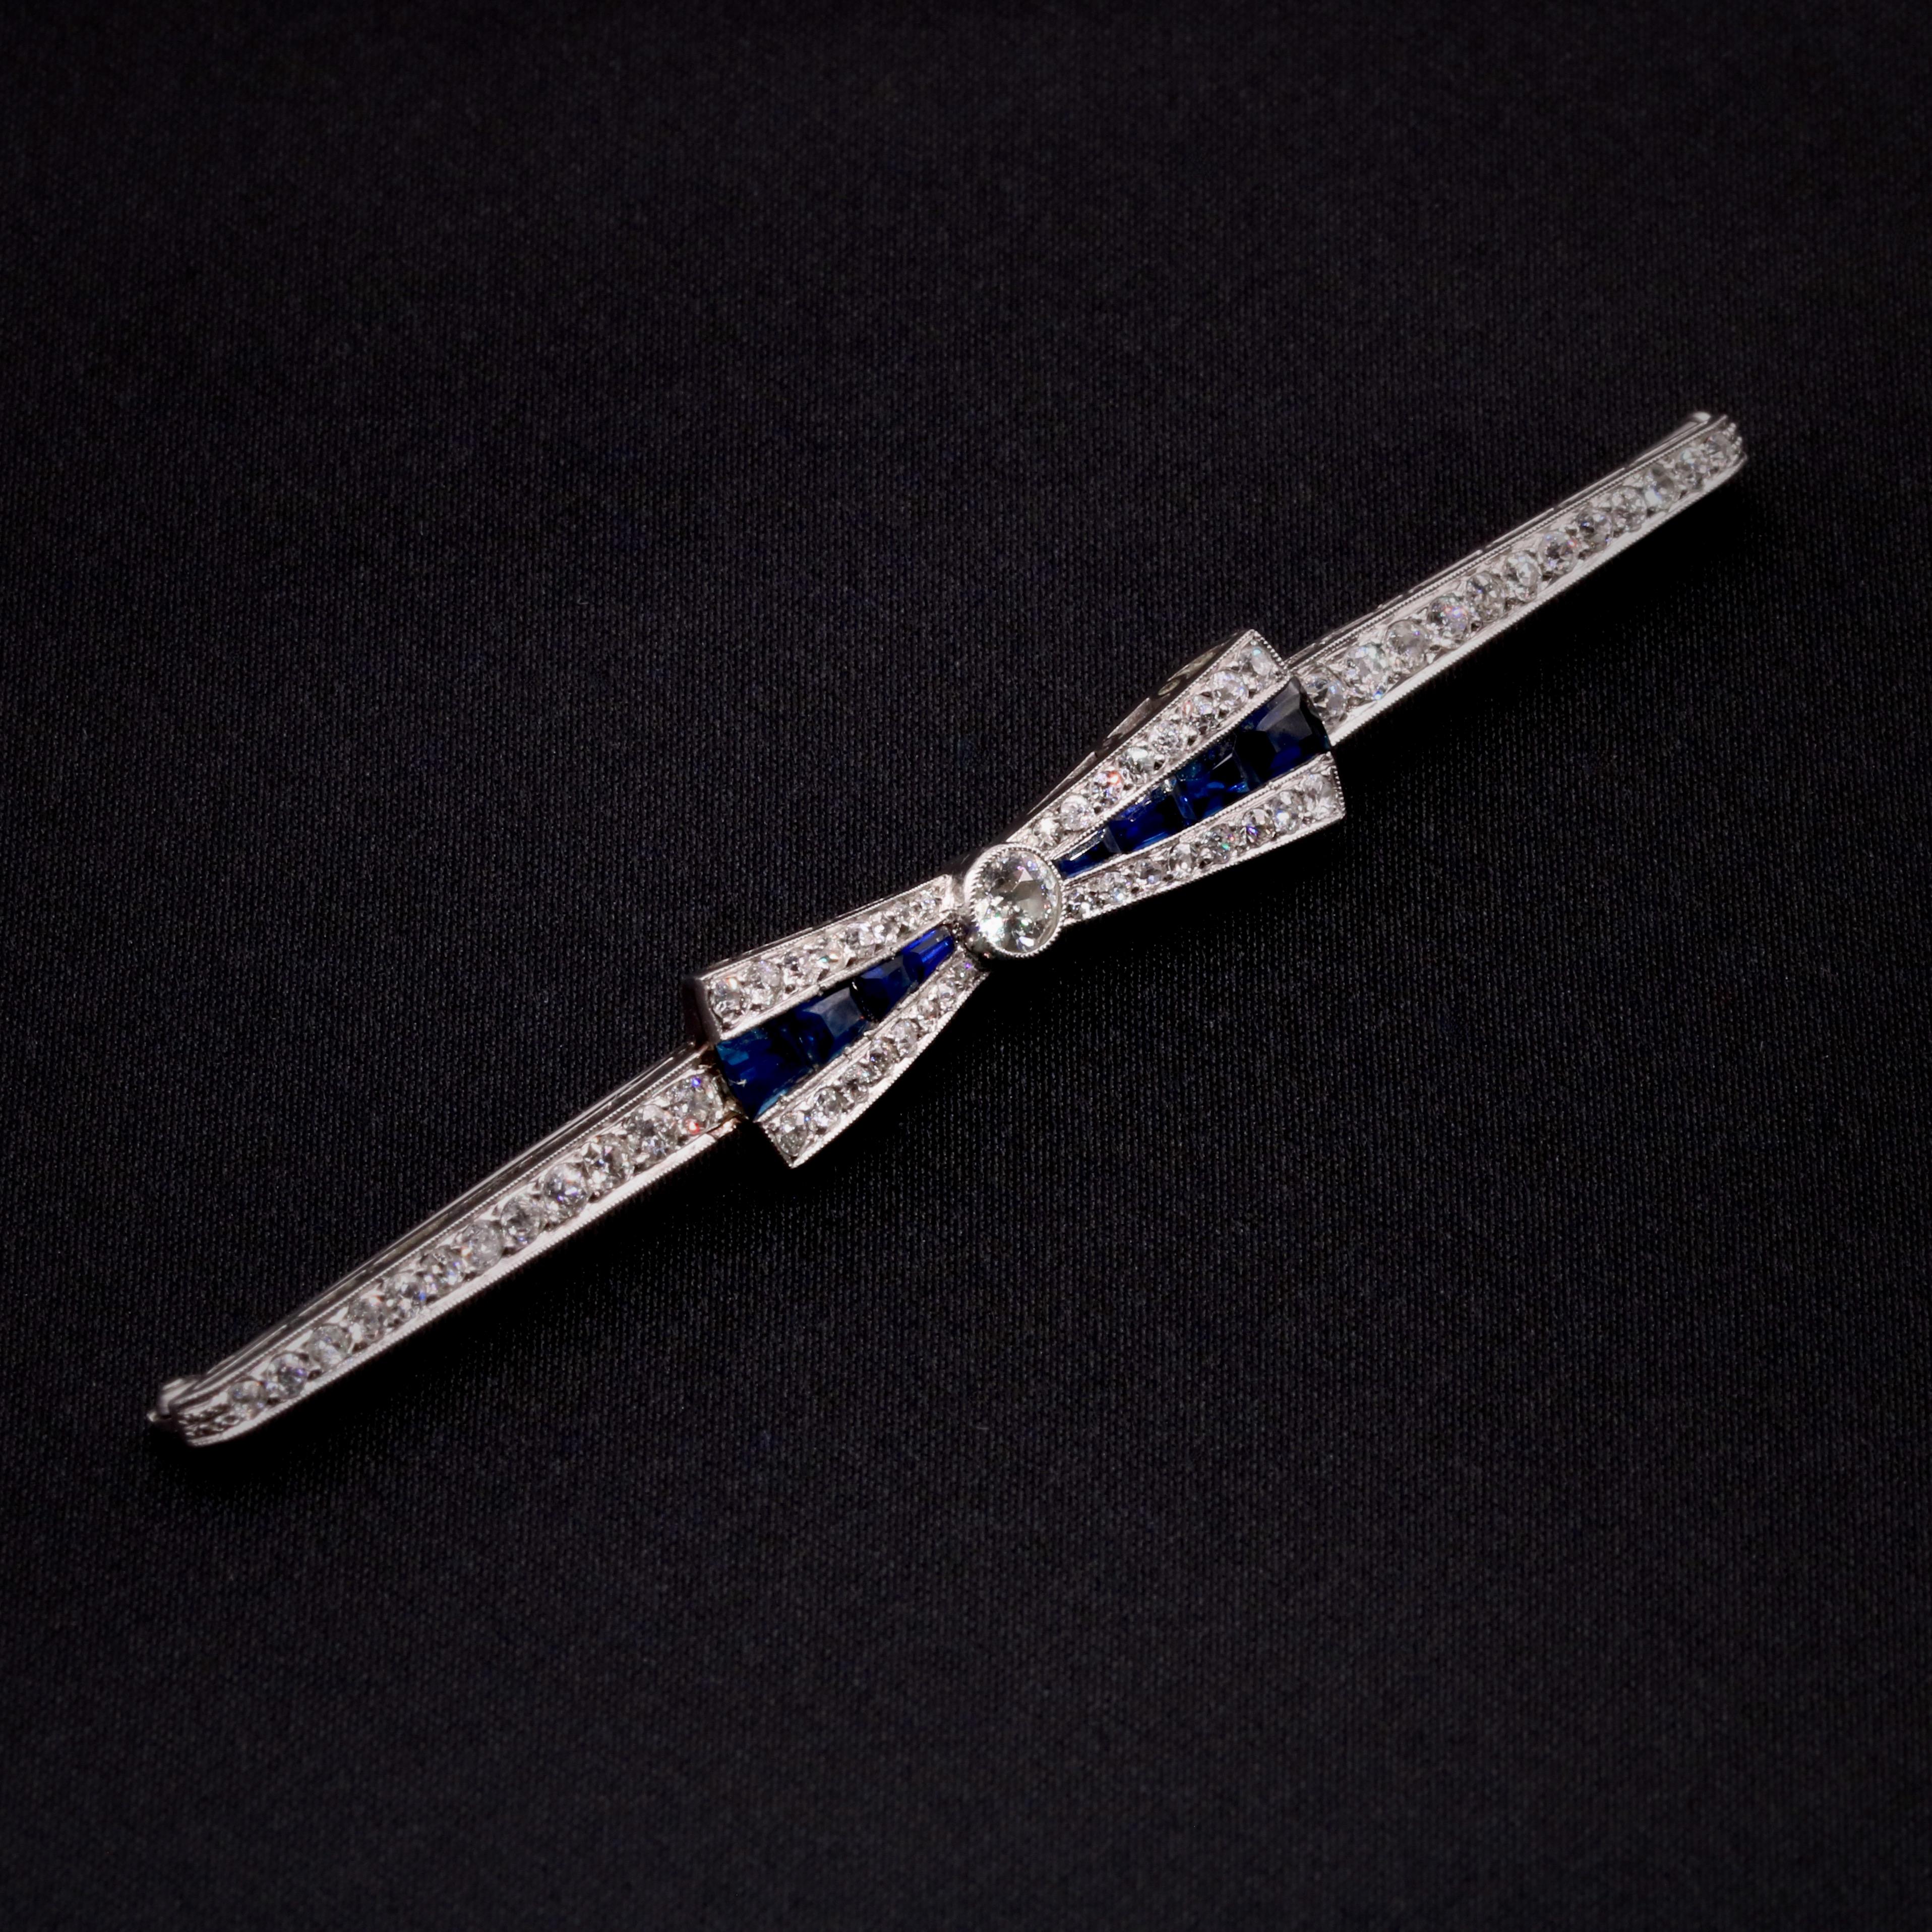 Eine Art-Deco-Brosche aus Saphiren, Diamanten und Platin, bestehend aus acht blauen Saphiren im Stufenschliff, einem großen Diamanten im alten europäischen Schliff und sechsundfünfzig kleineren Diamanten im alten europäischen Schliff und im